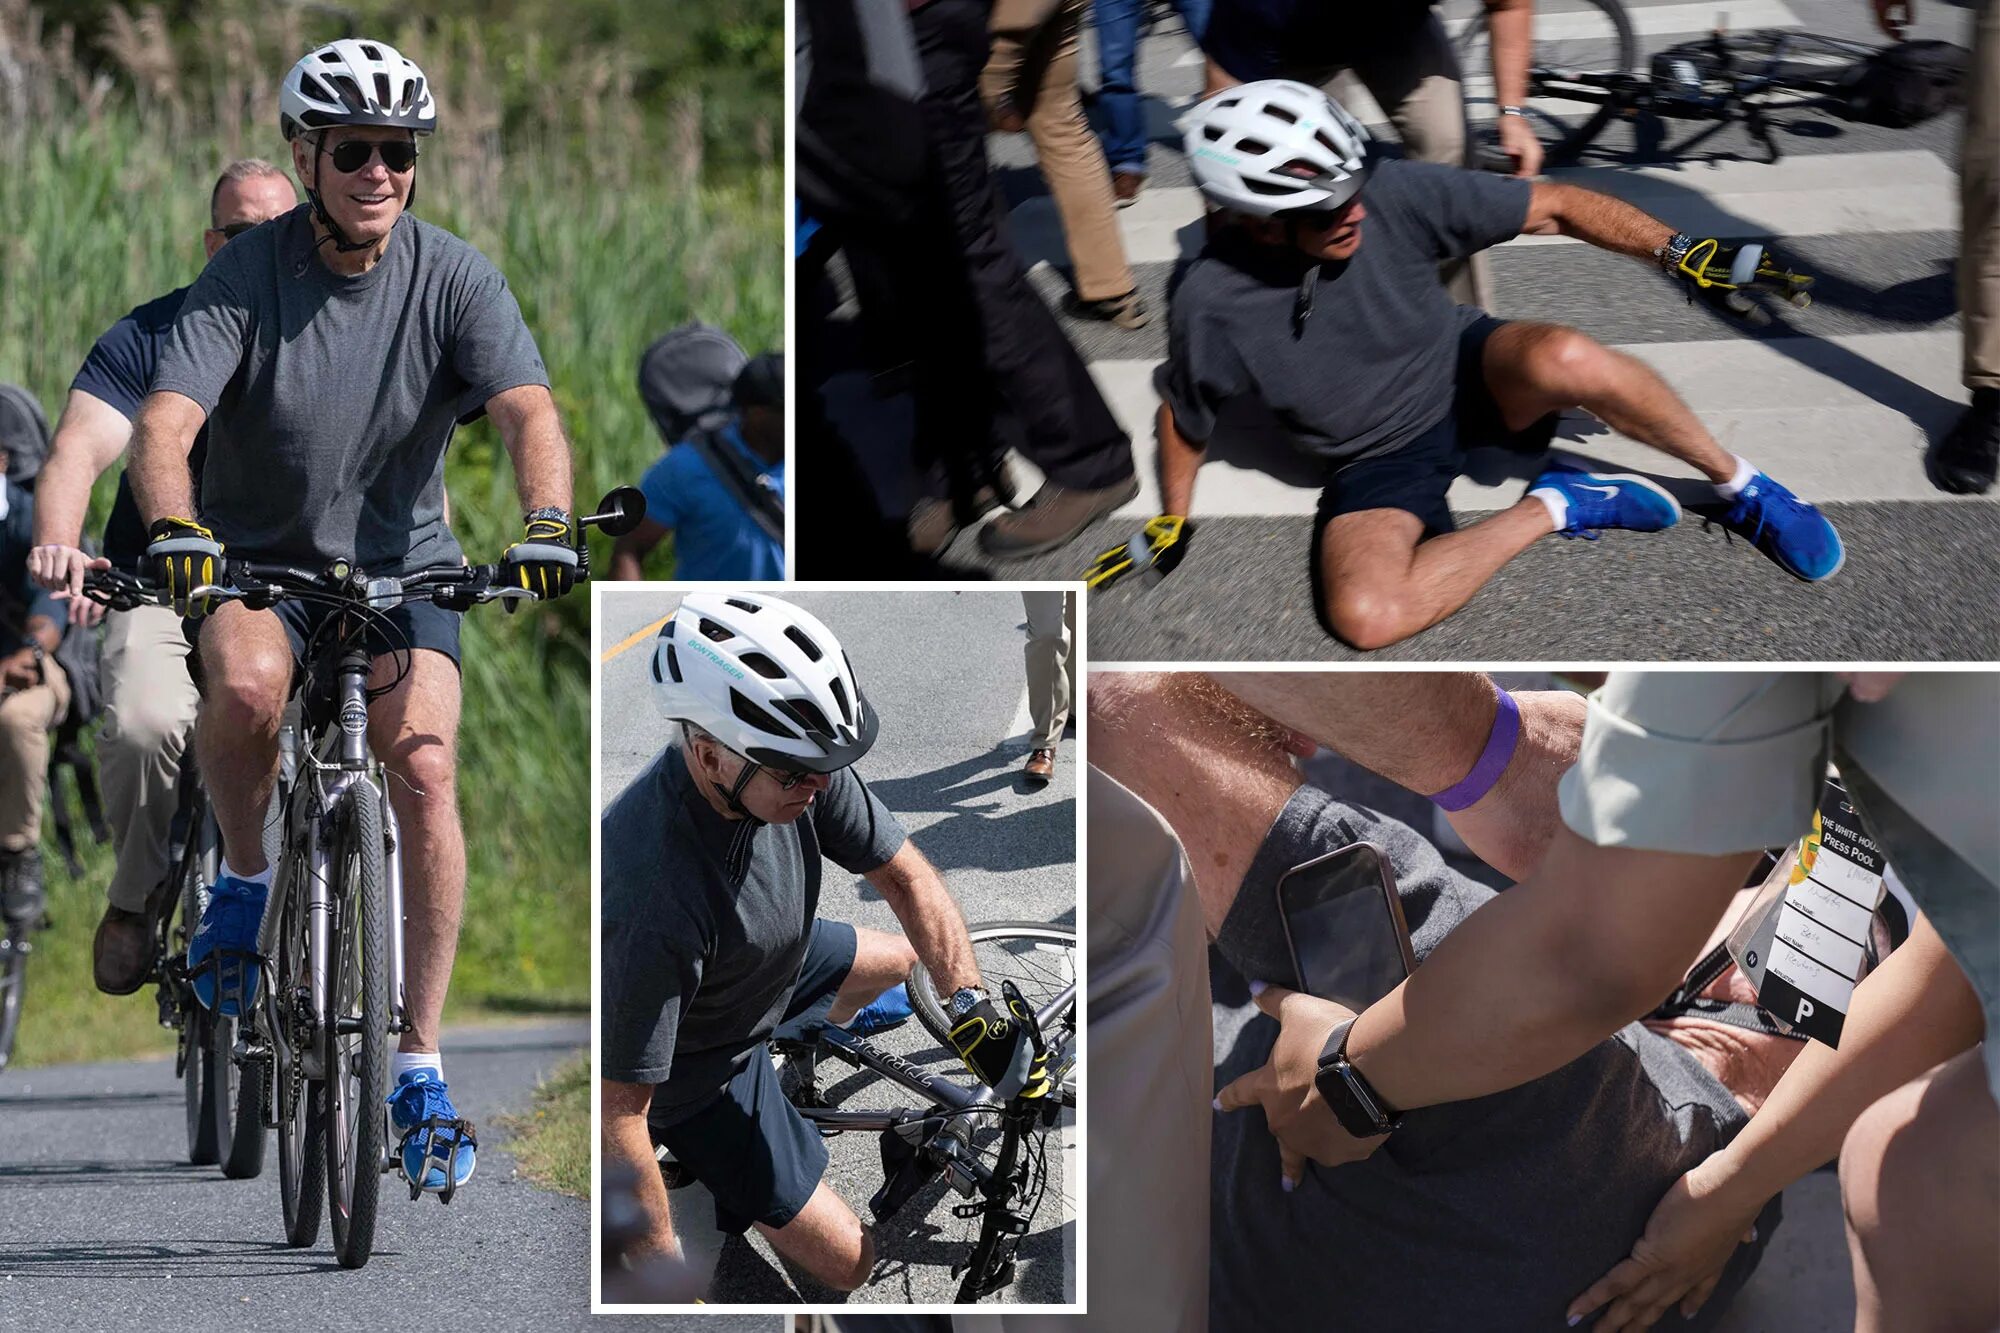 Joe Biden Falls off Bike. Джо Байден на велосипеде. Джо Байден падает с велосипеда. Байден на велосипеде фото. Off his bike